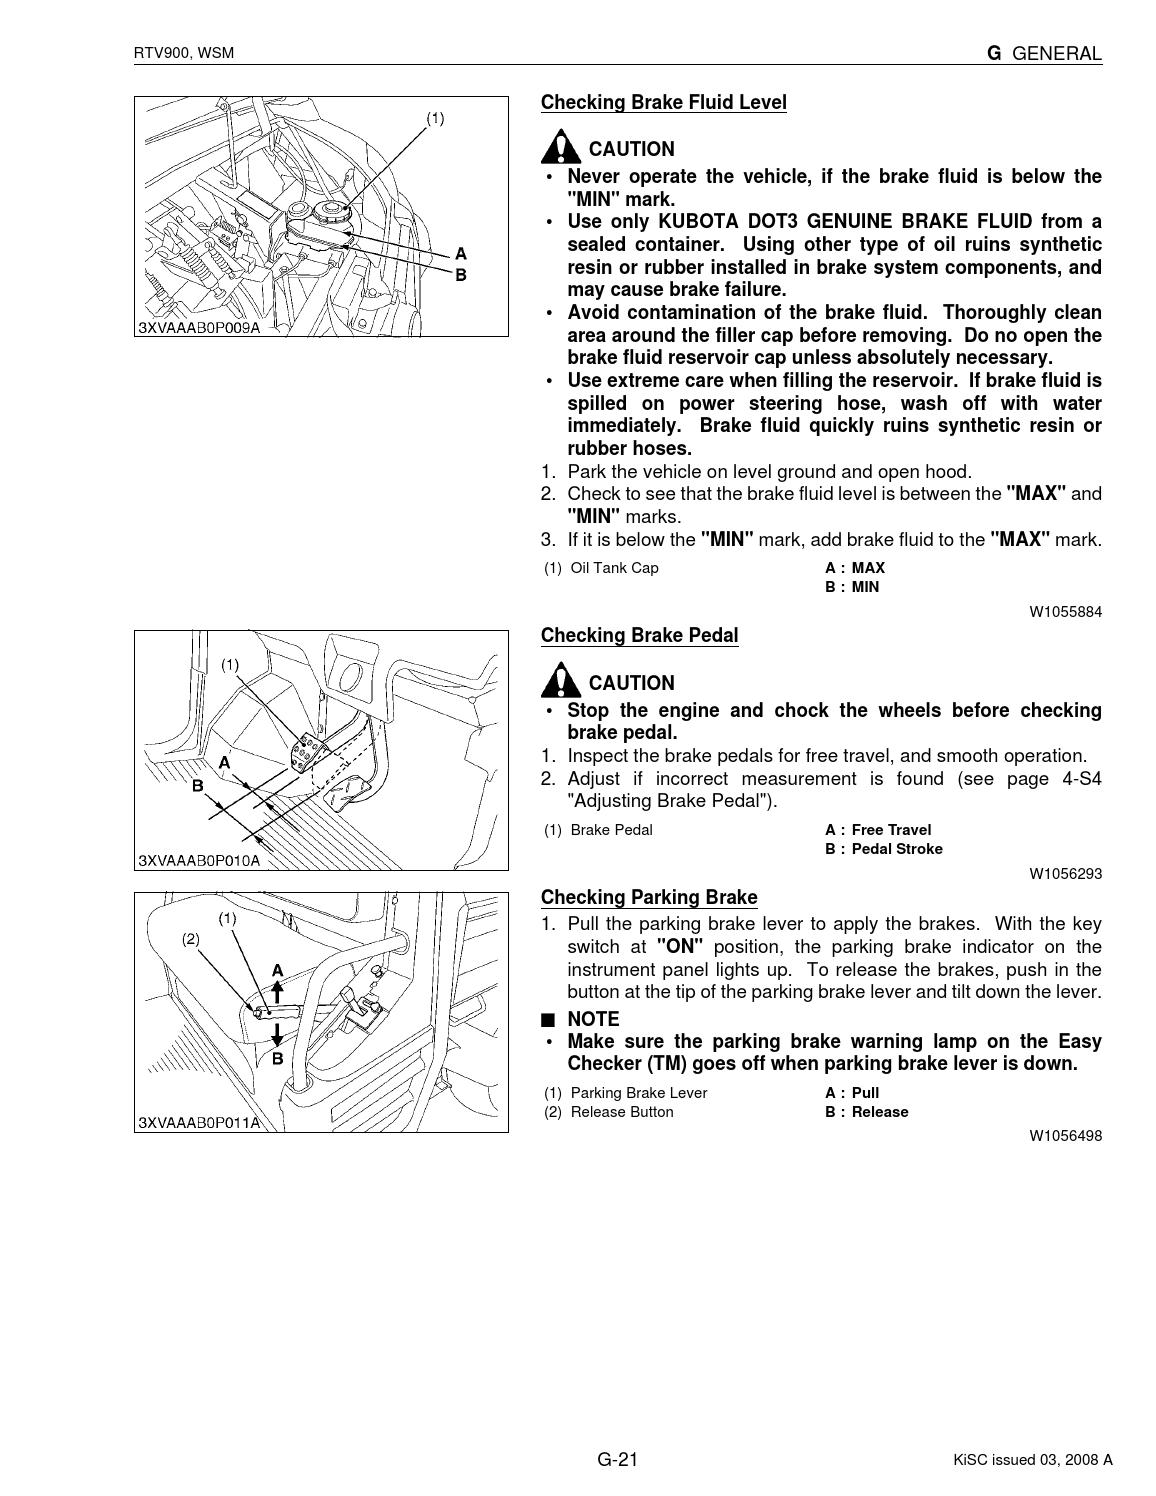 Download Kubota Rtv 900 Manual